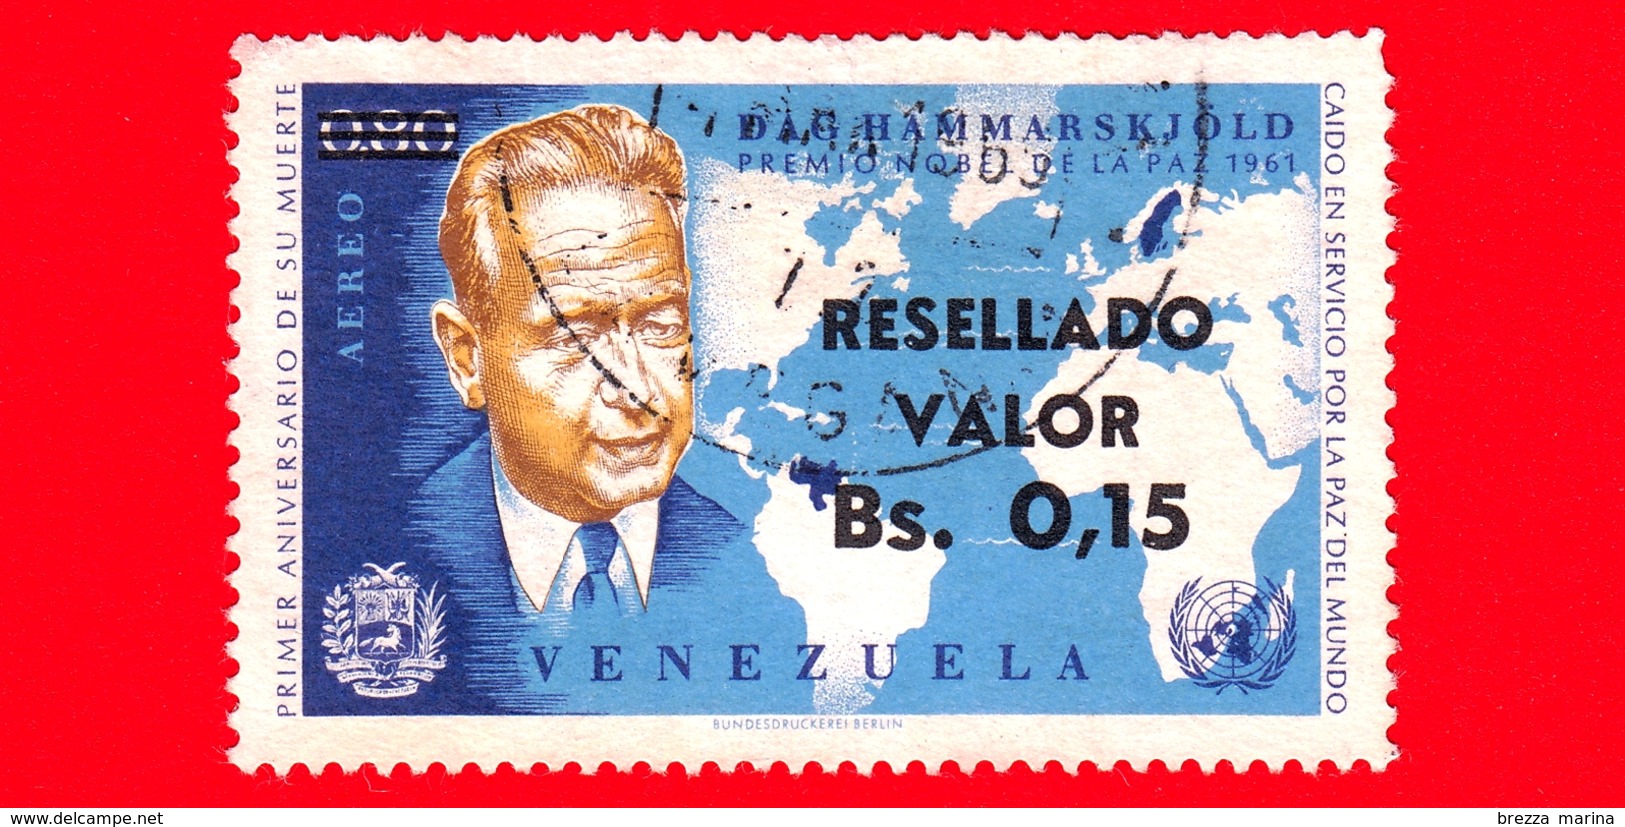 VENEZUELA - Usato - 1965 - Primo Anniversario Della Morte Di Dag Hammarskjold - Premio Nobel Pace 1961 - 0.15 Su 0.80 - Venezuela